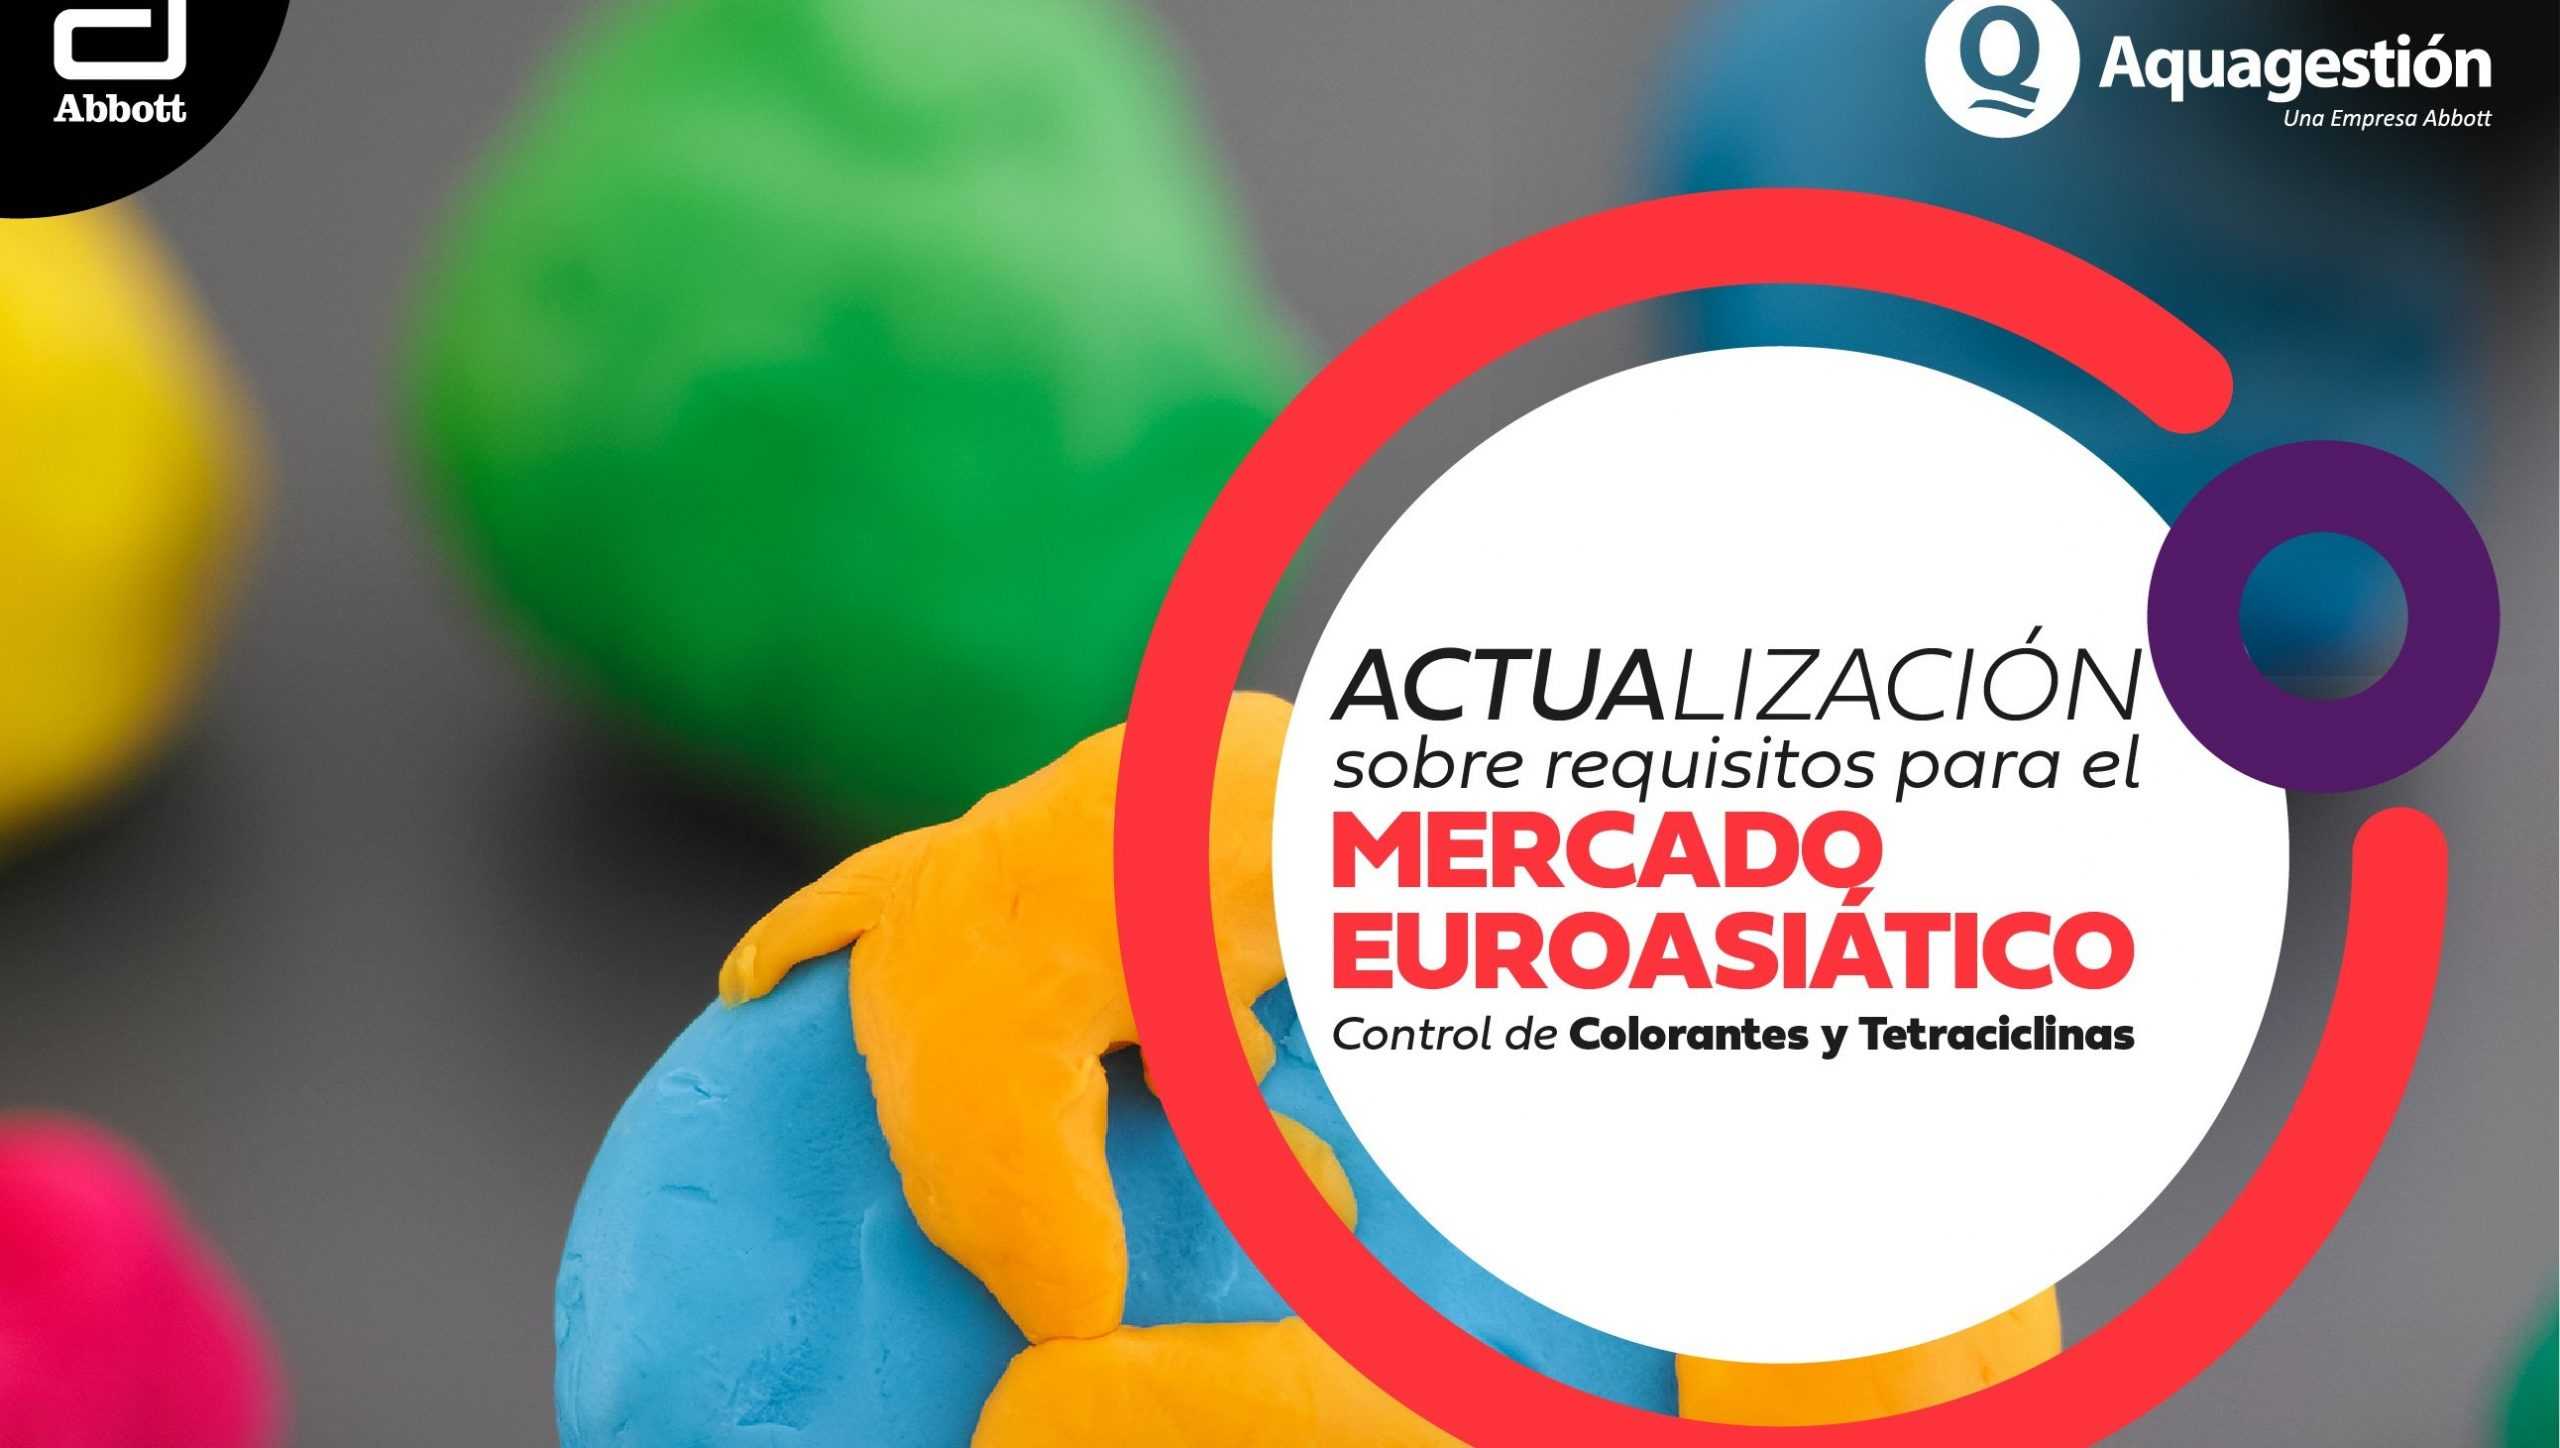 Aquagestión realizará workshop sobre nuevos requisitos normativos para el mercado euroasiático